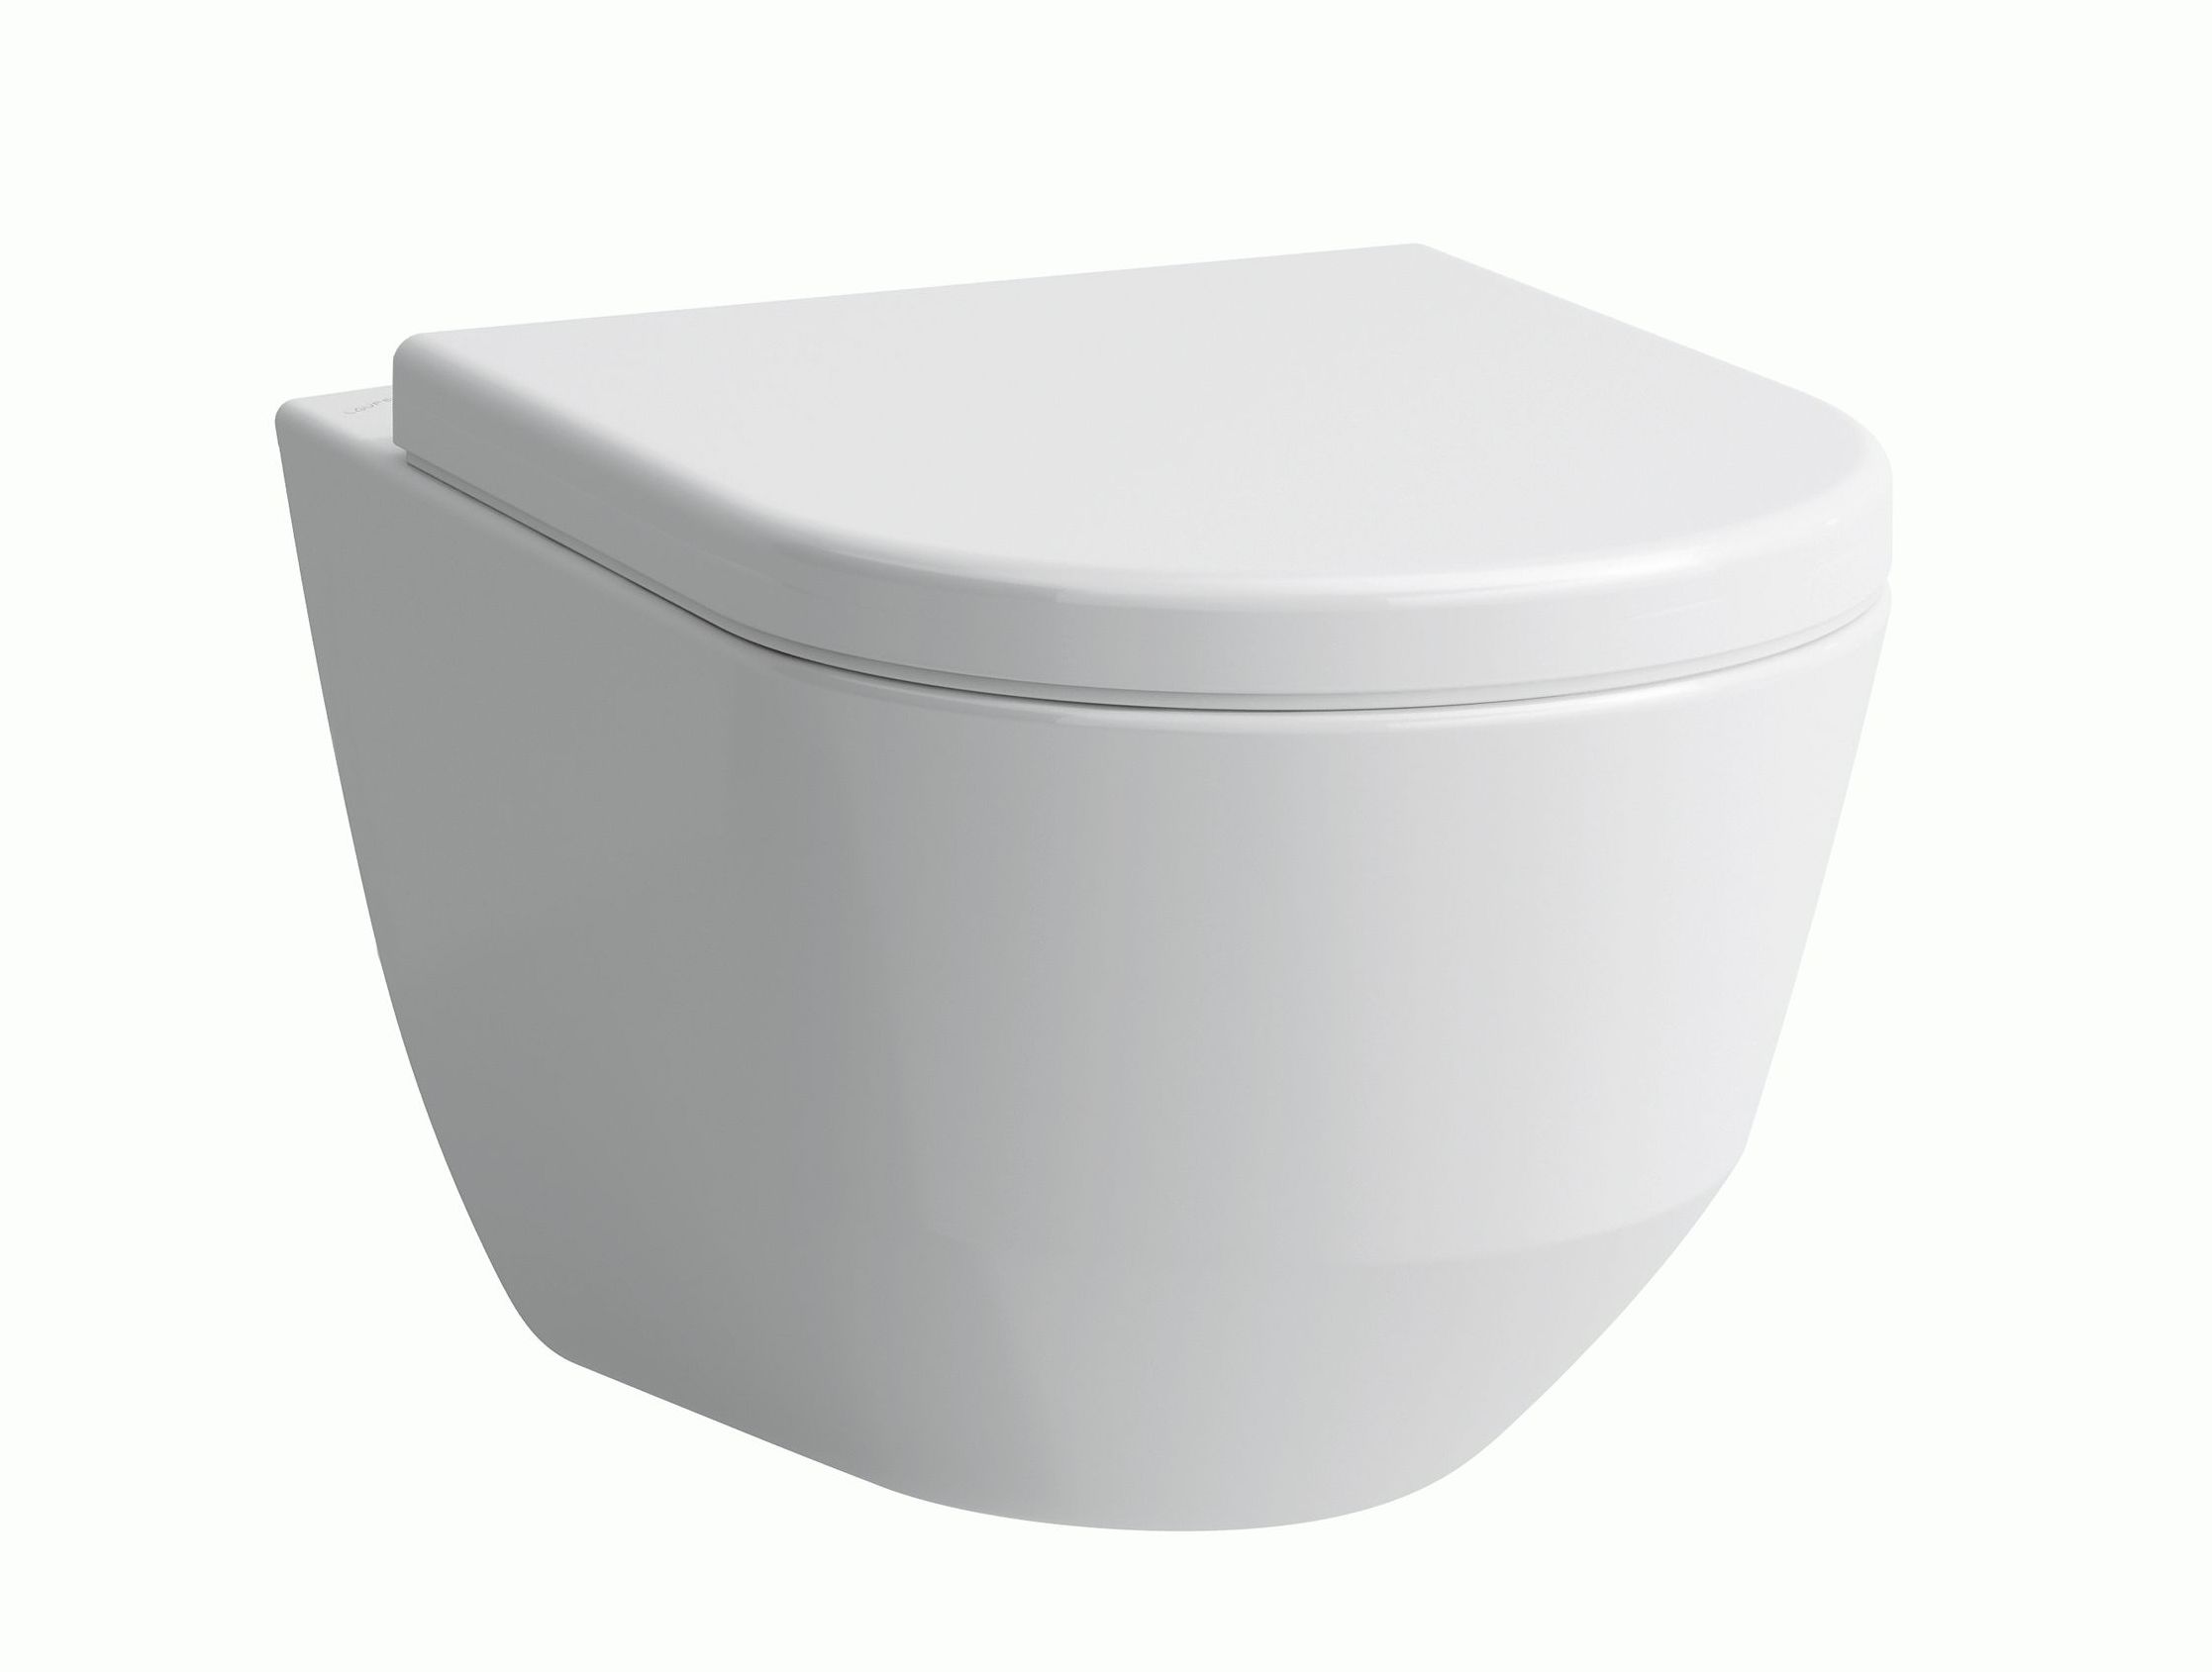 umywalki narożne _ranking – sklep łazienki lazienkarium.pl – najlepsze umywalki narożne – Keramag MyDay